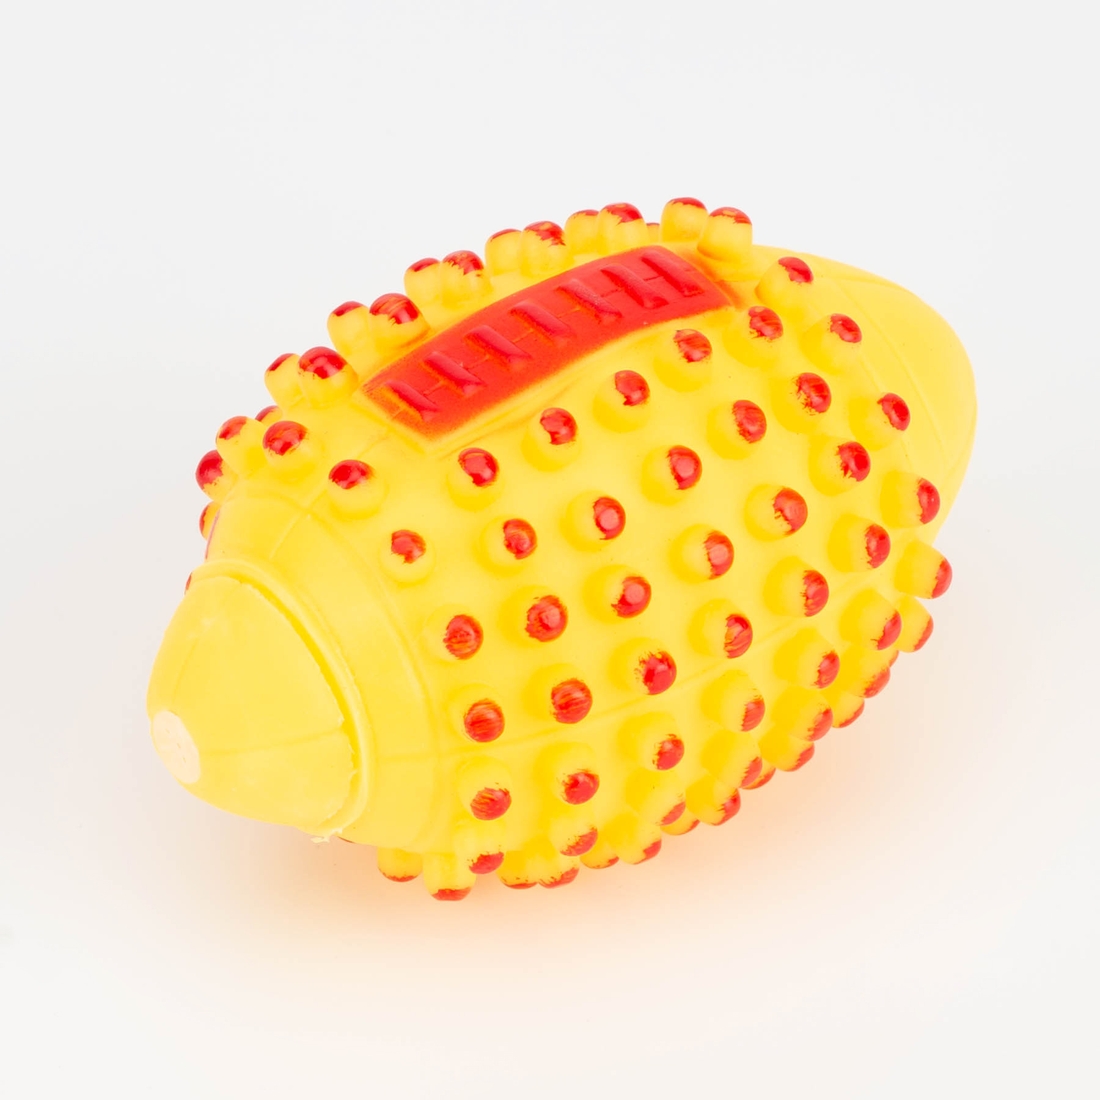 Резиновый мяч для животных ATS4975 с пищалкой Желтый (2000989575023)